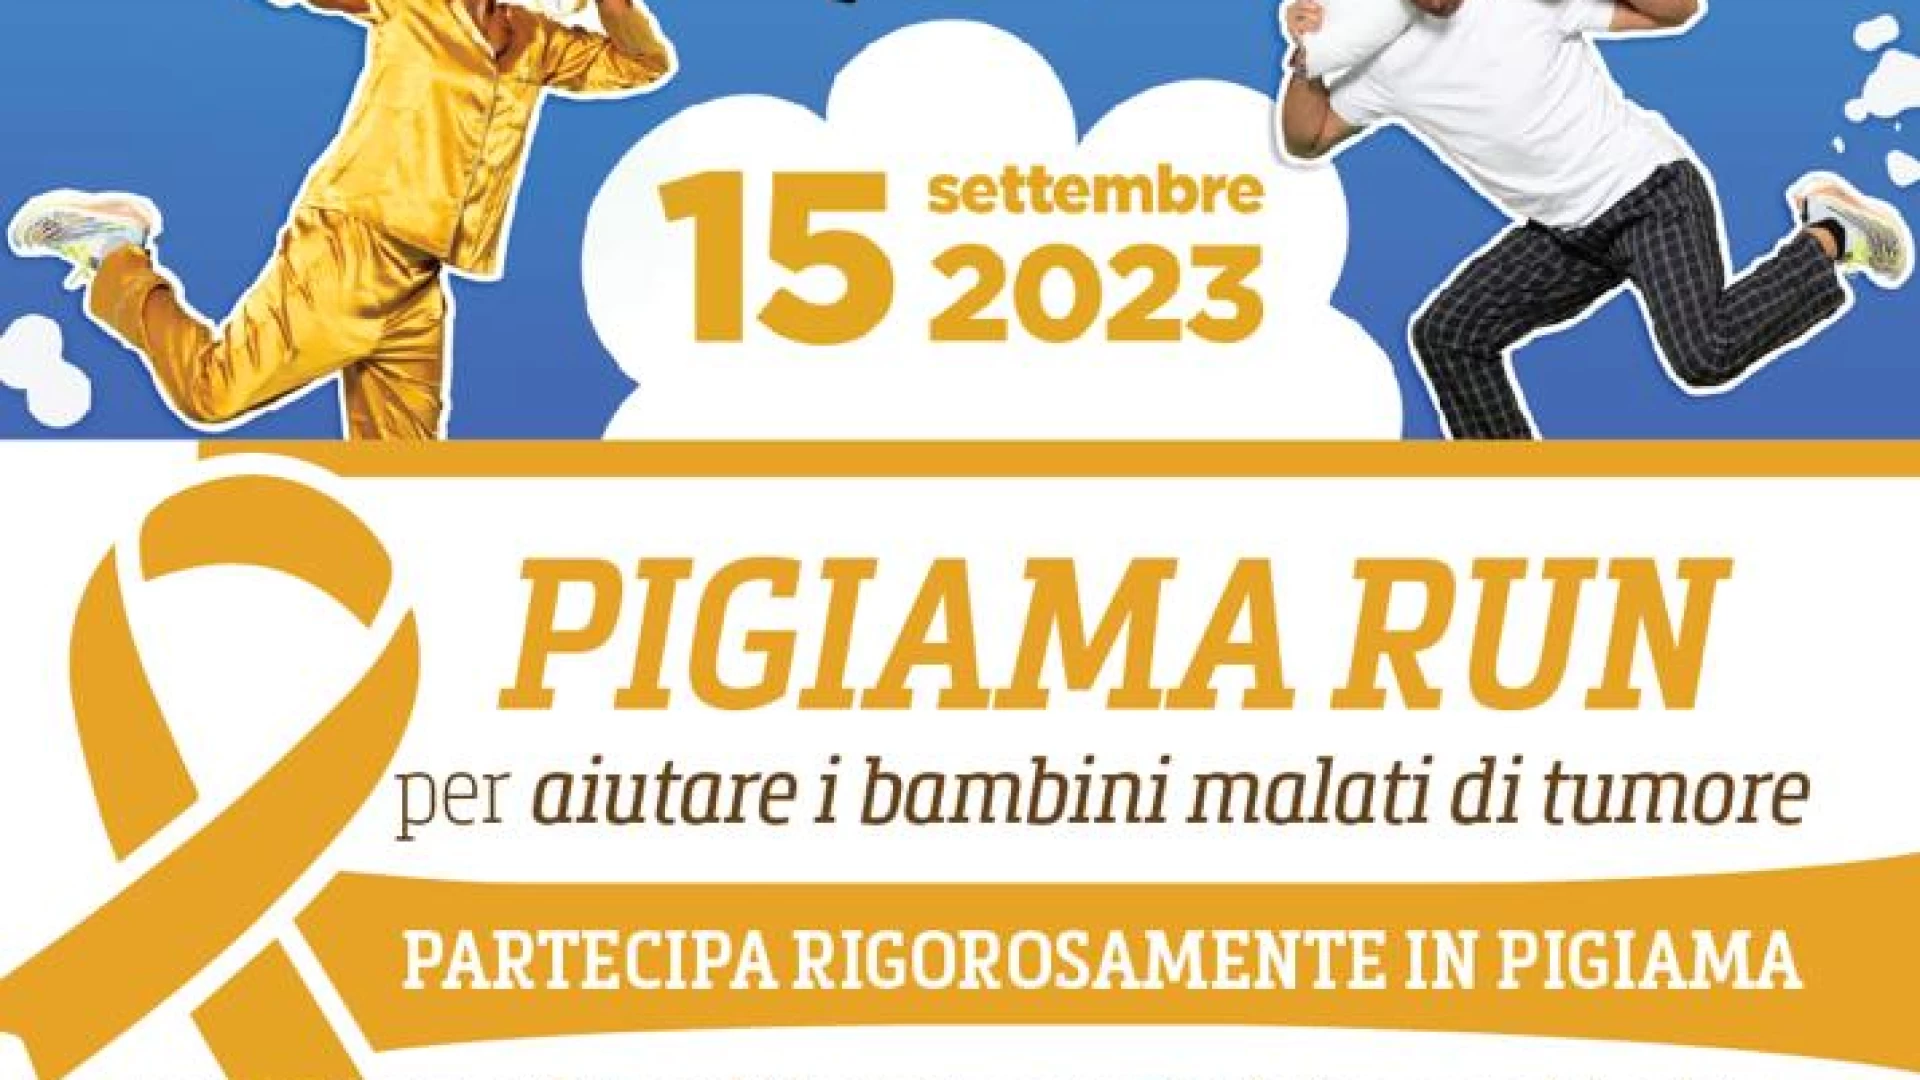 Pigiama Run a Termoli organizzata e promossa dalla Lilt di Campobasso per aiutare i bambini malati di tumore.